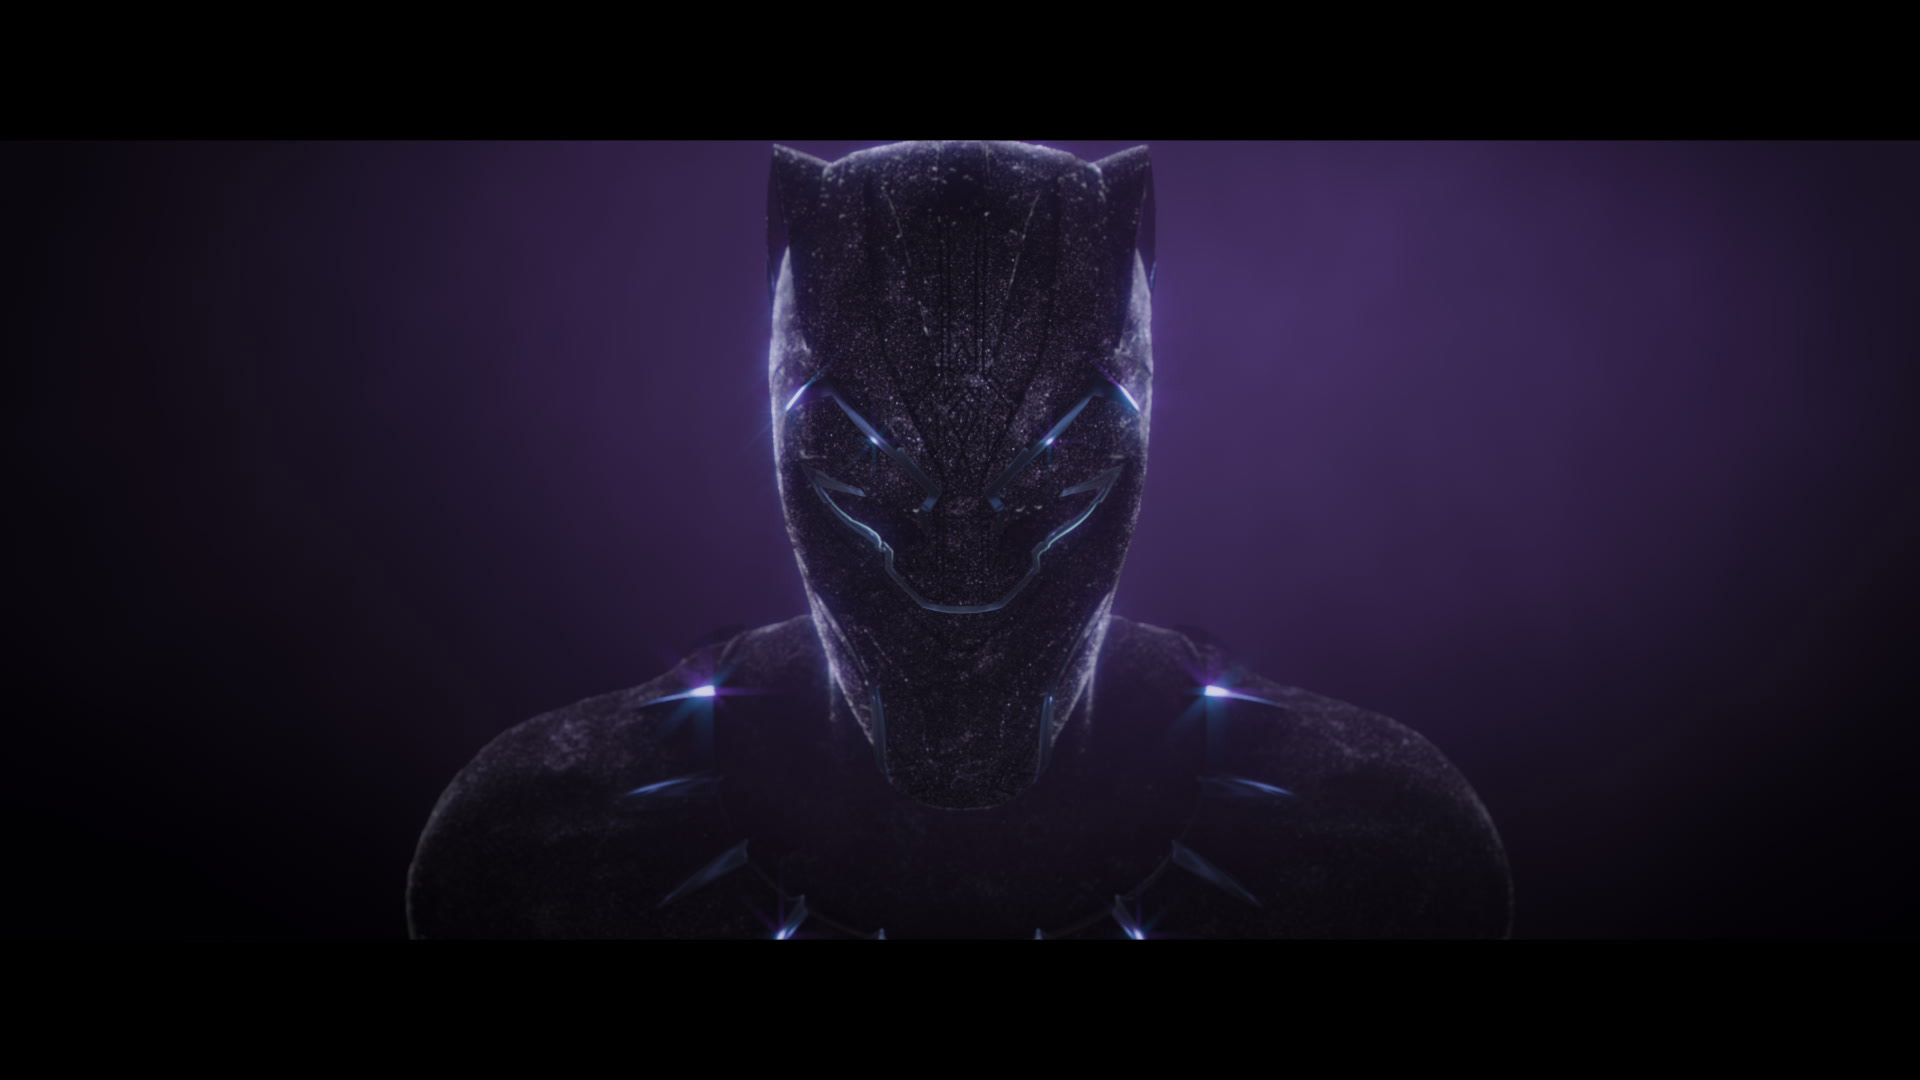  Black Panther